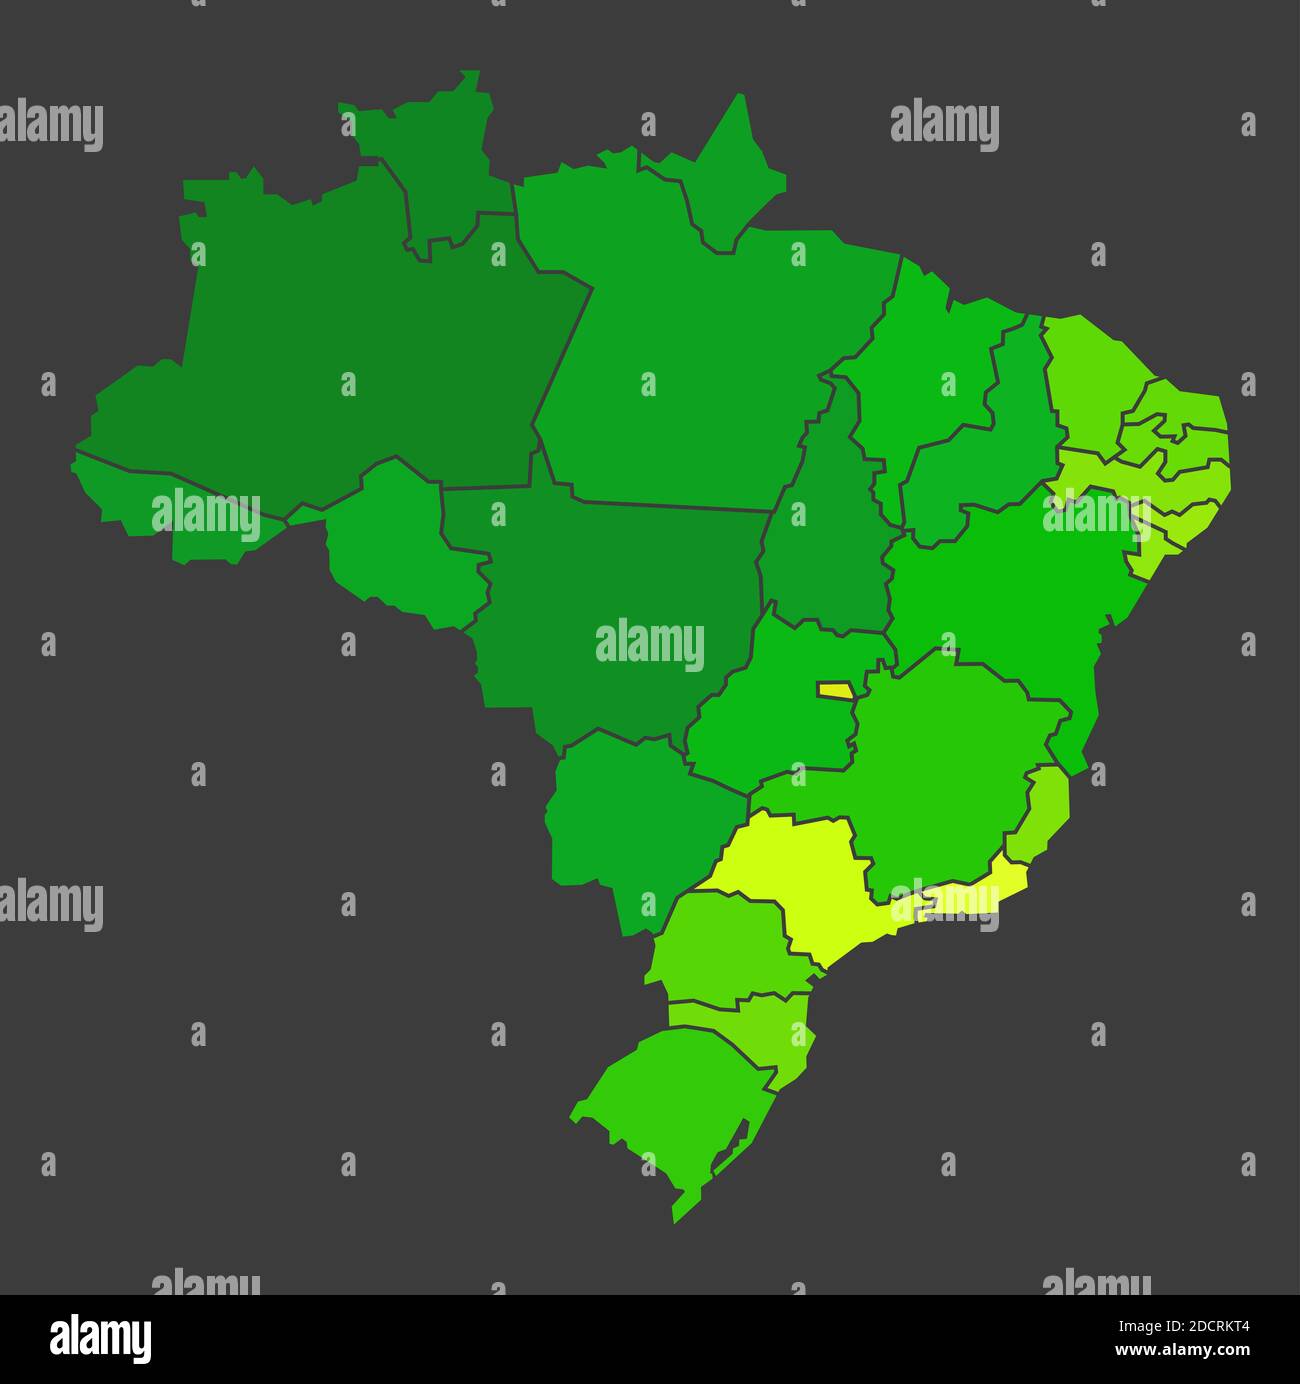 Brazil population heat map as color density illustration Stock Photo - Alamy